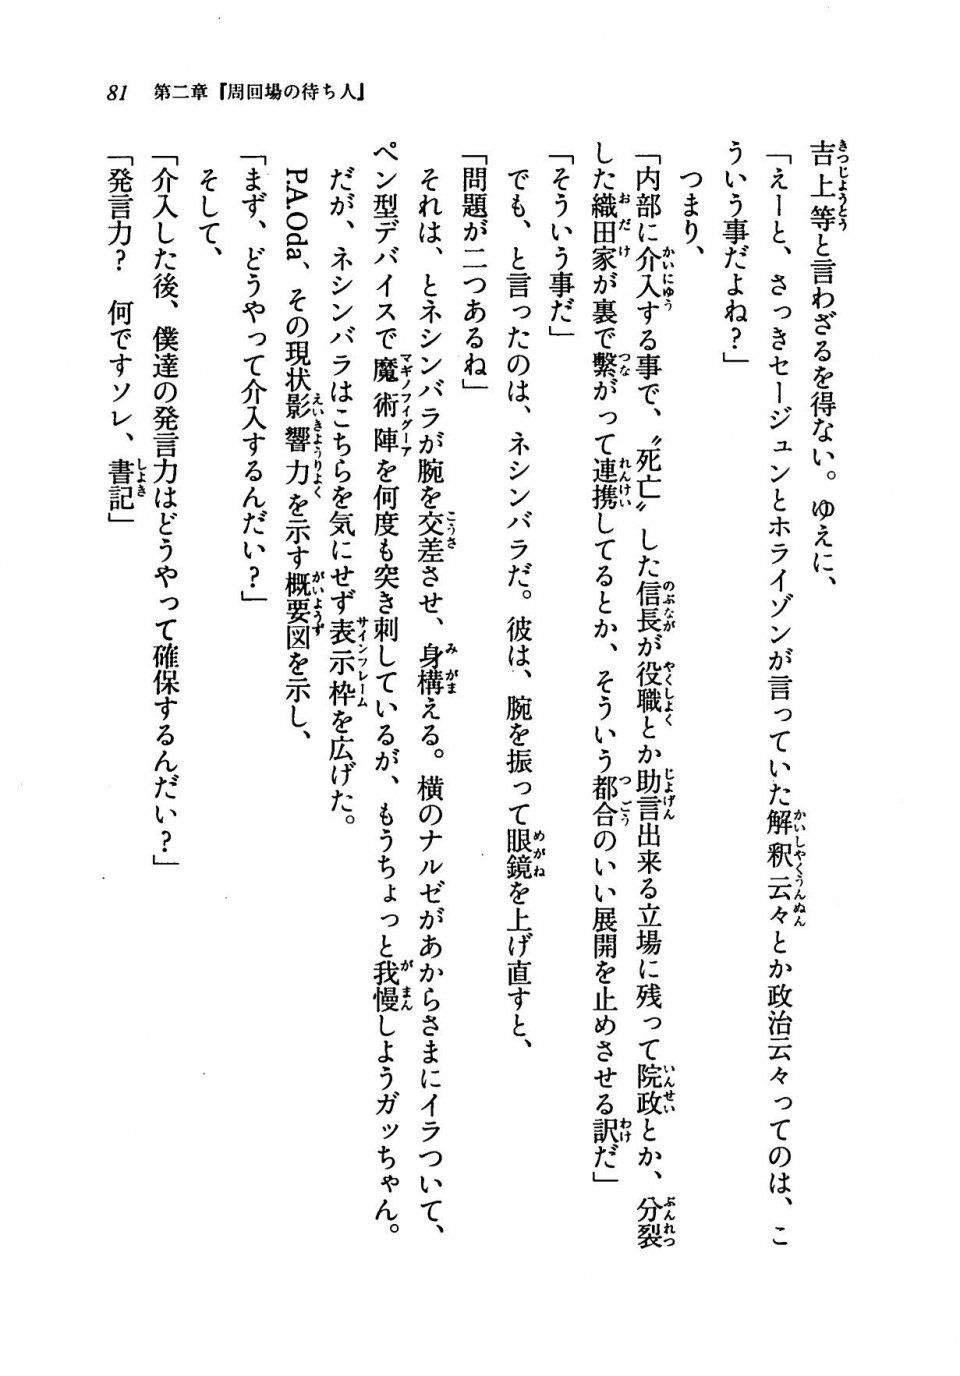 Kyoukai Senjou no Horizon LN Vol 19(8A) - Photo #81